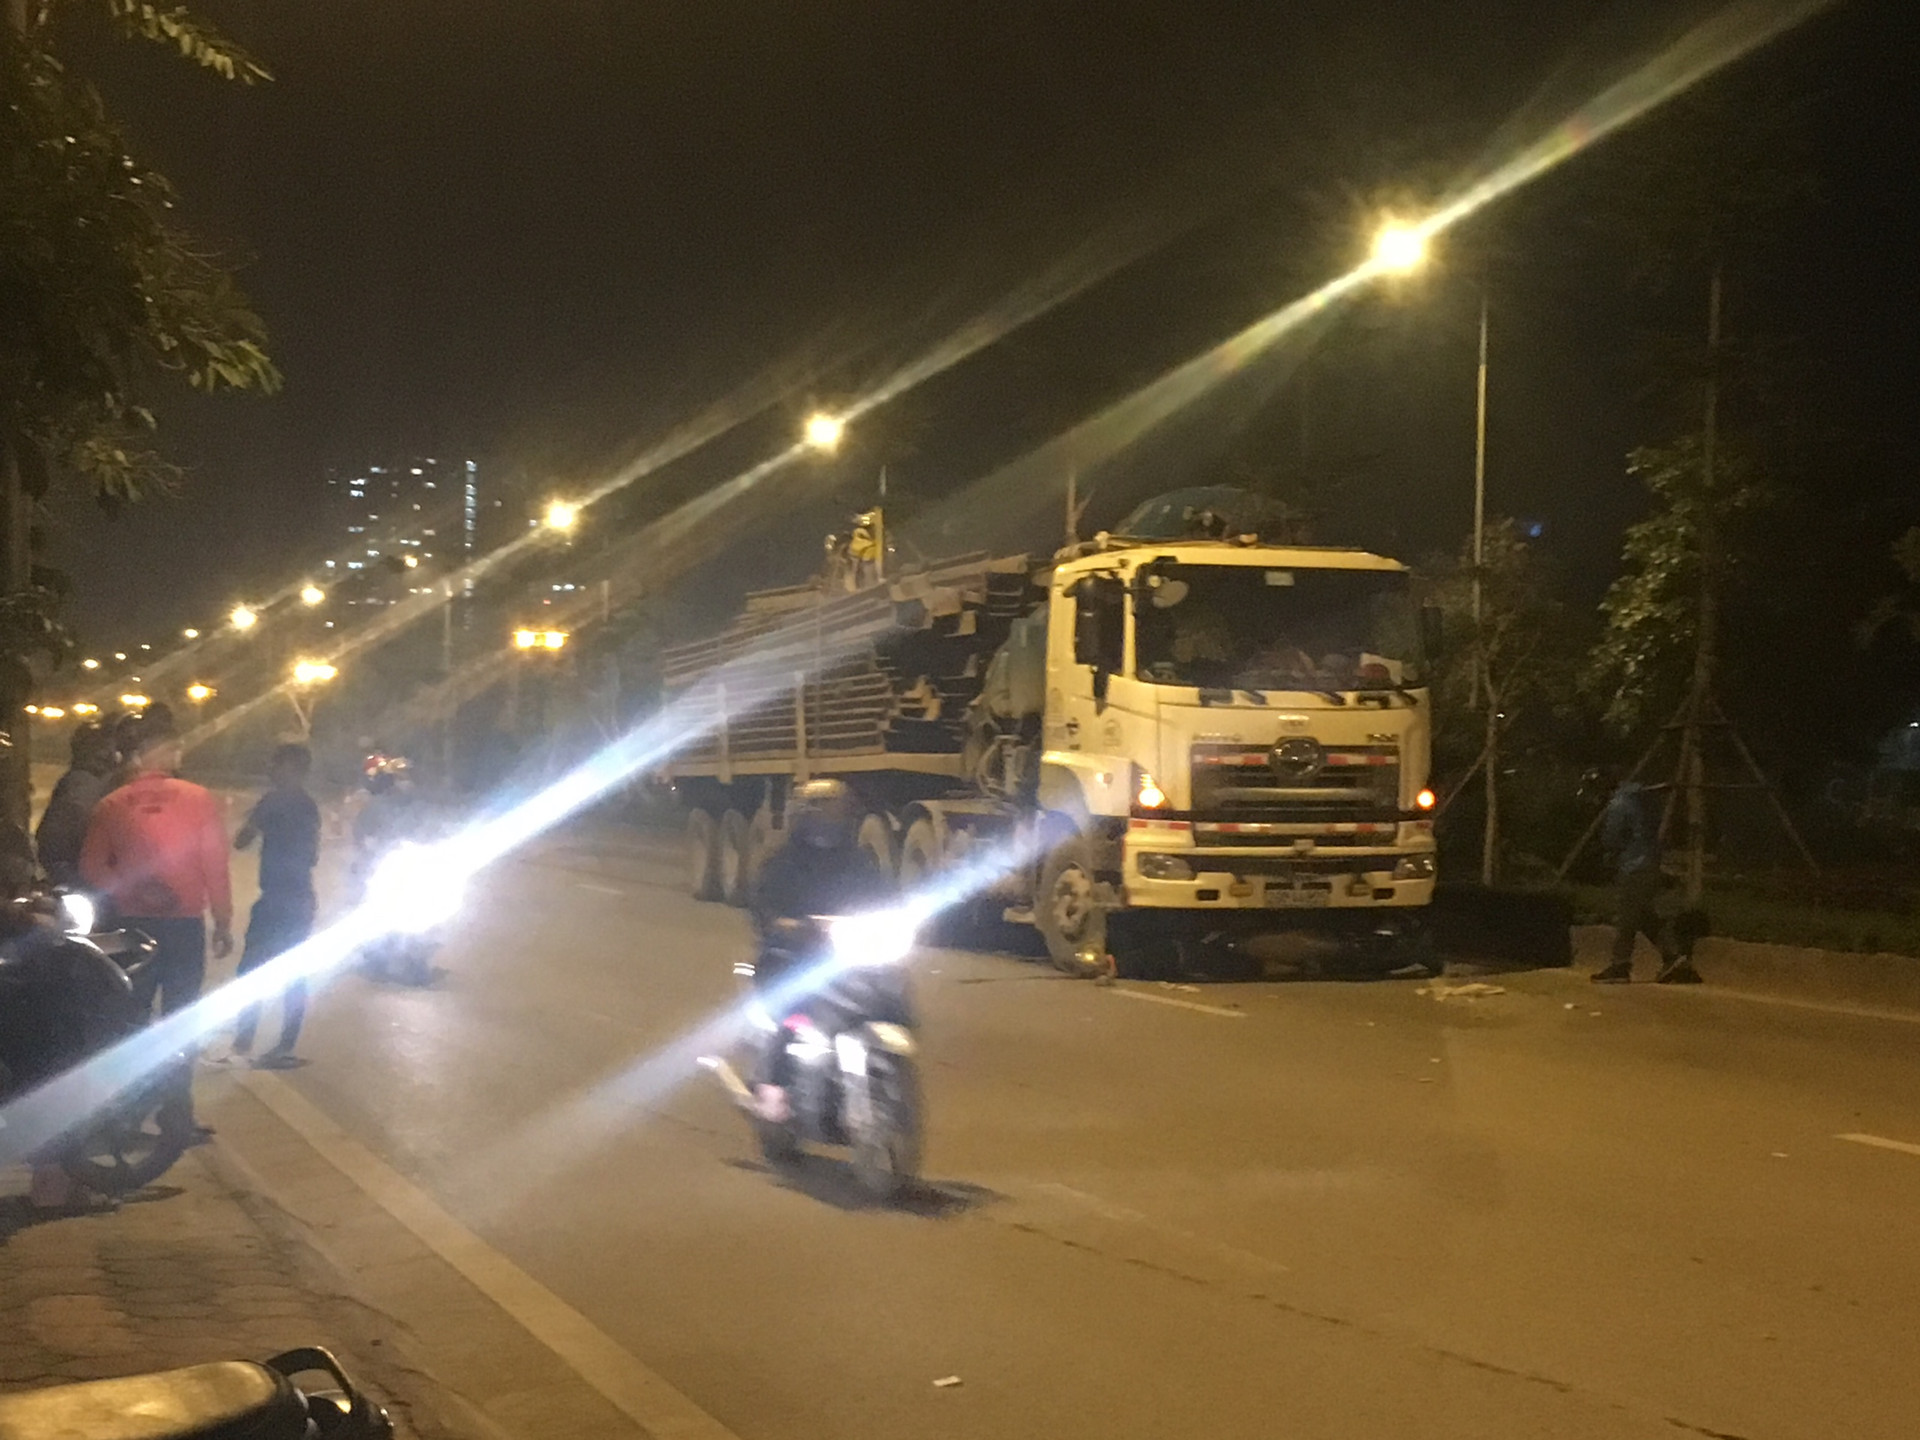 Hà Đông, Hà Nội: Xe Ô tô đầu kéo siêu trường, Siêu trọng kéo lê xe máy một người tử vong